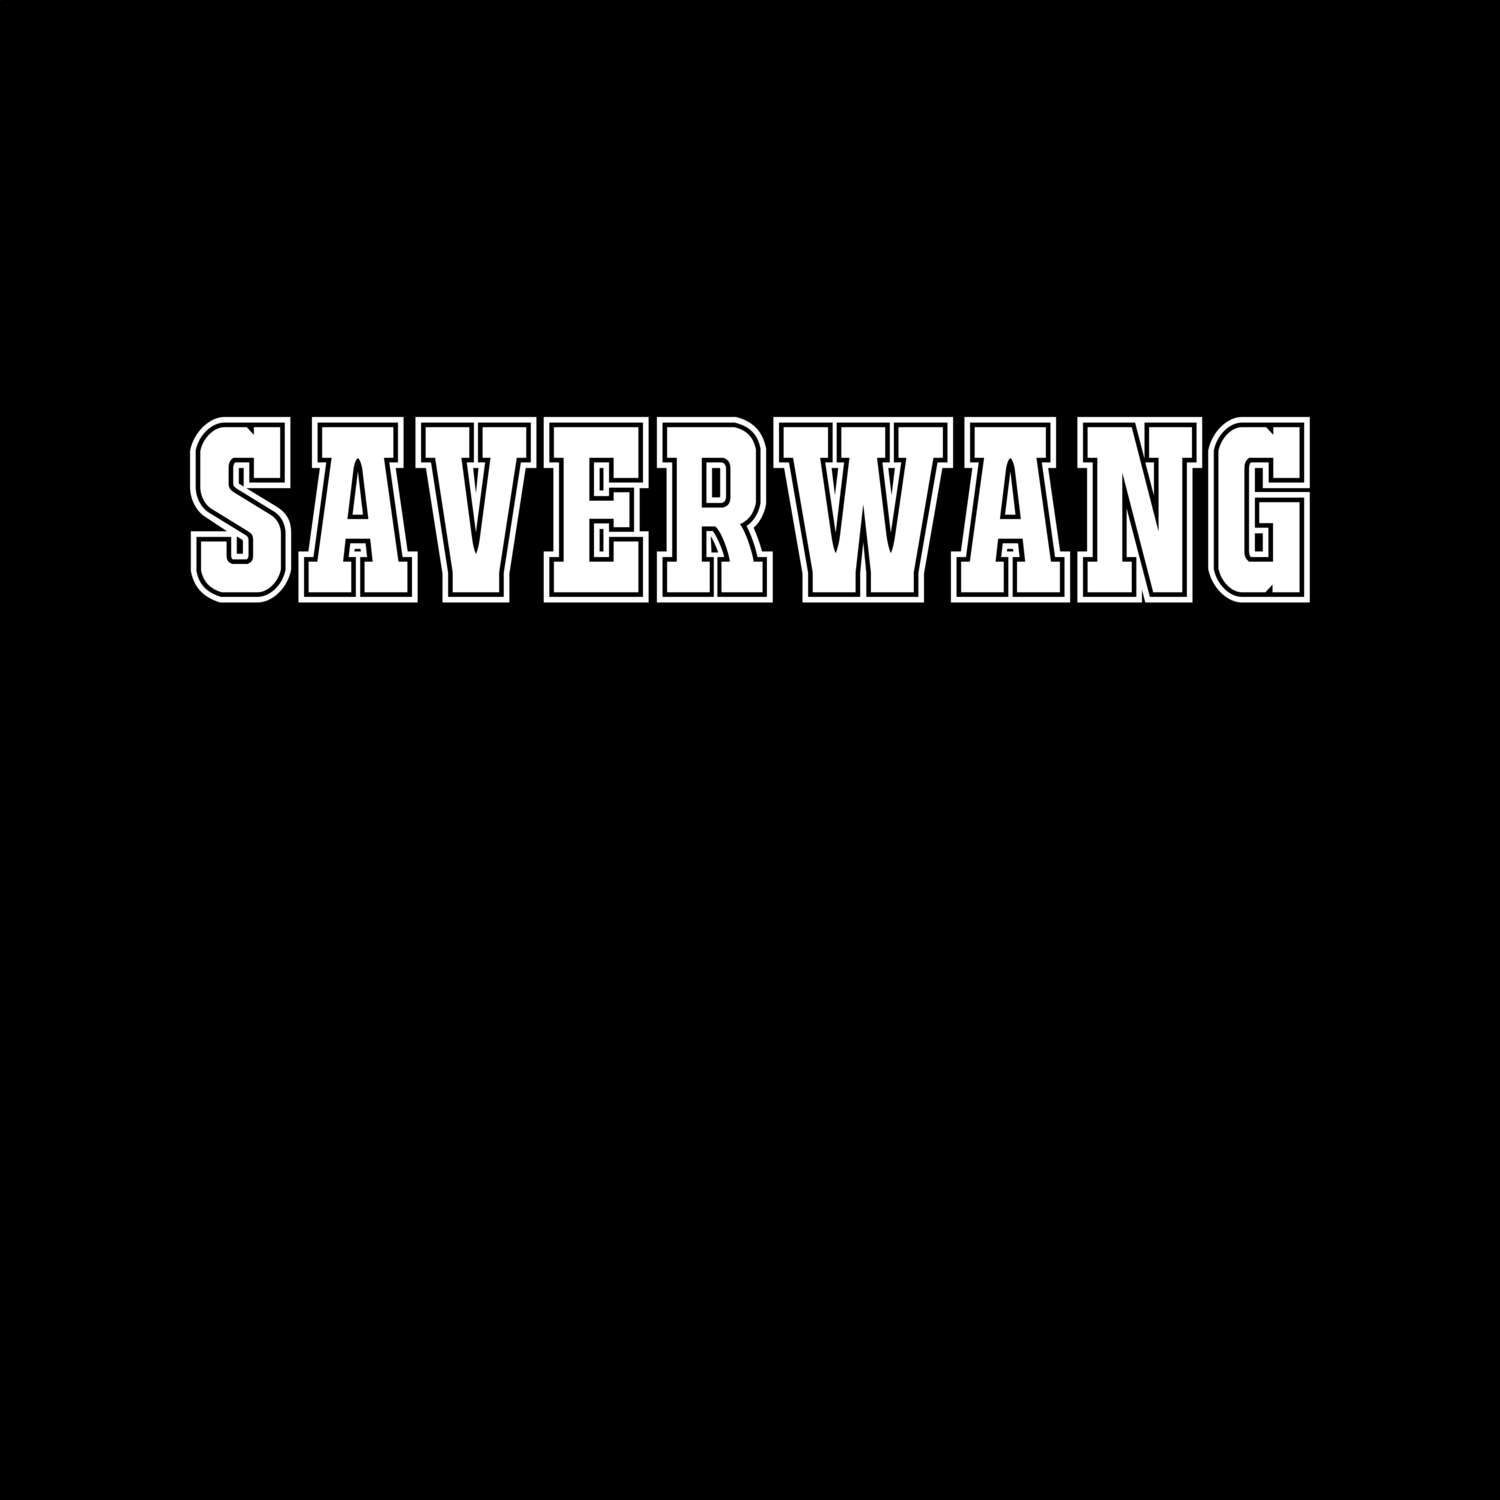 Saverwang T-Shirt »Classic«